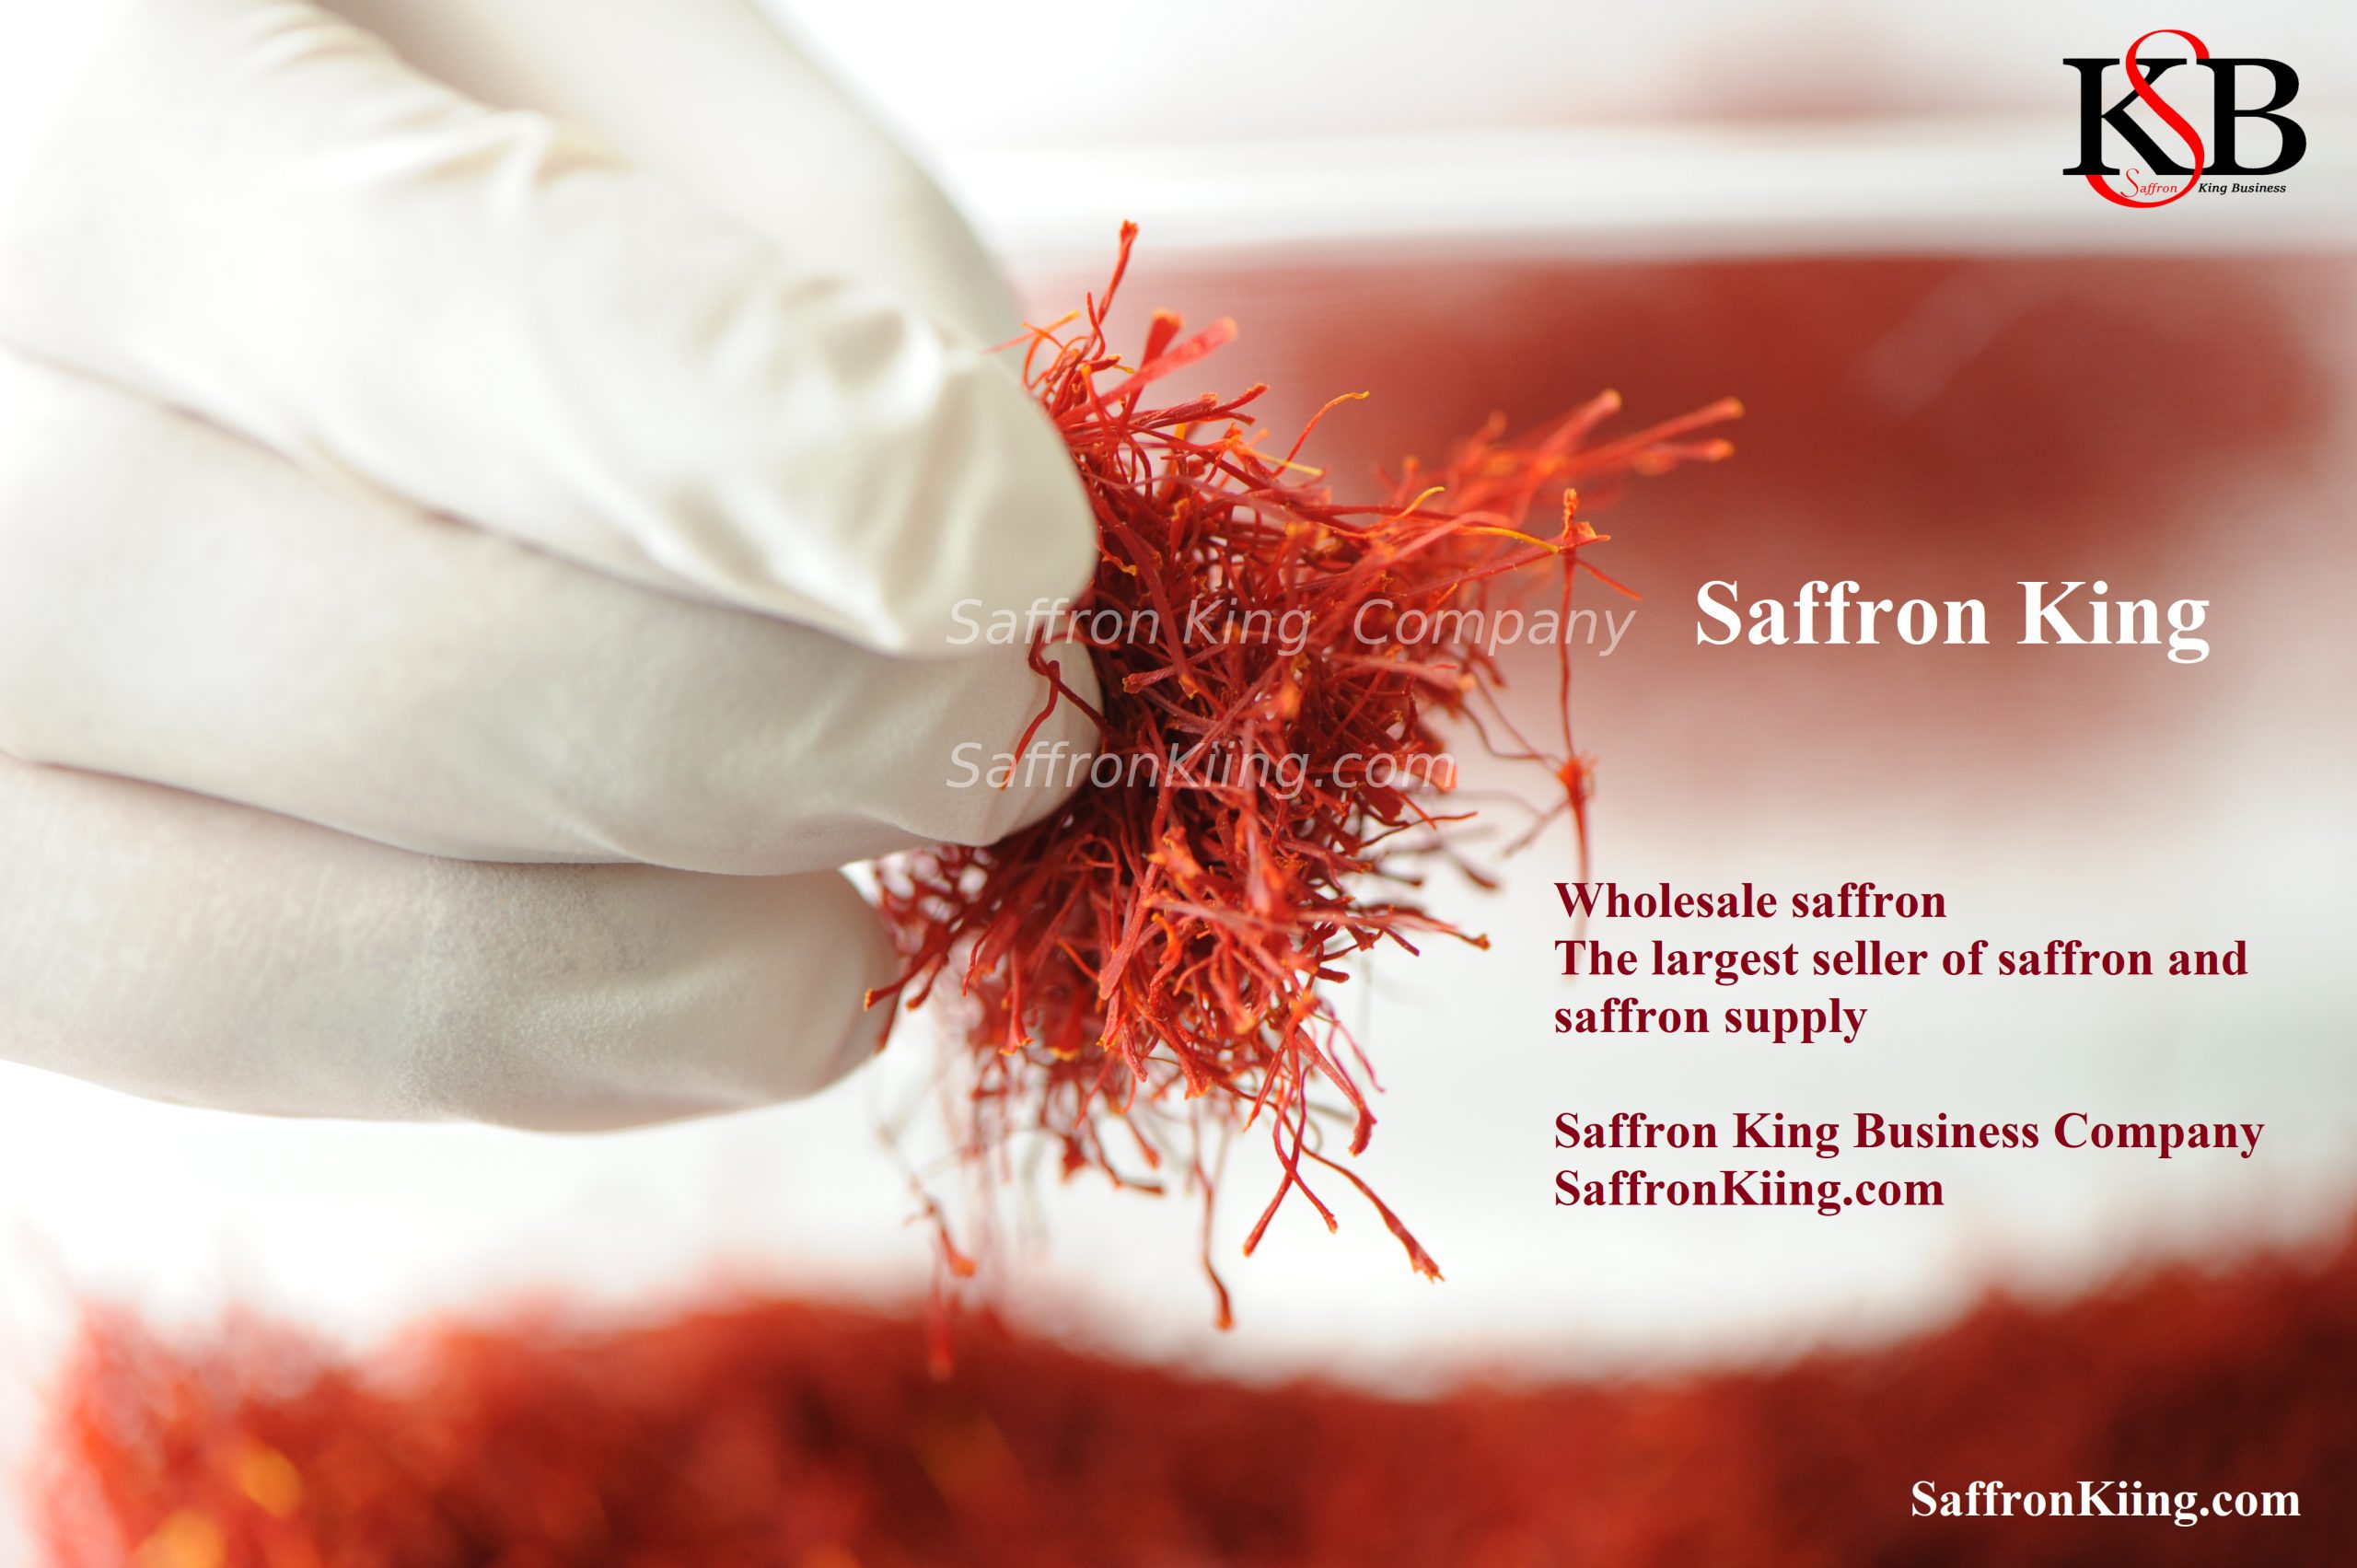 Price per kilo of saffron